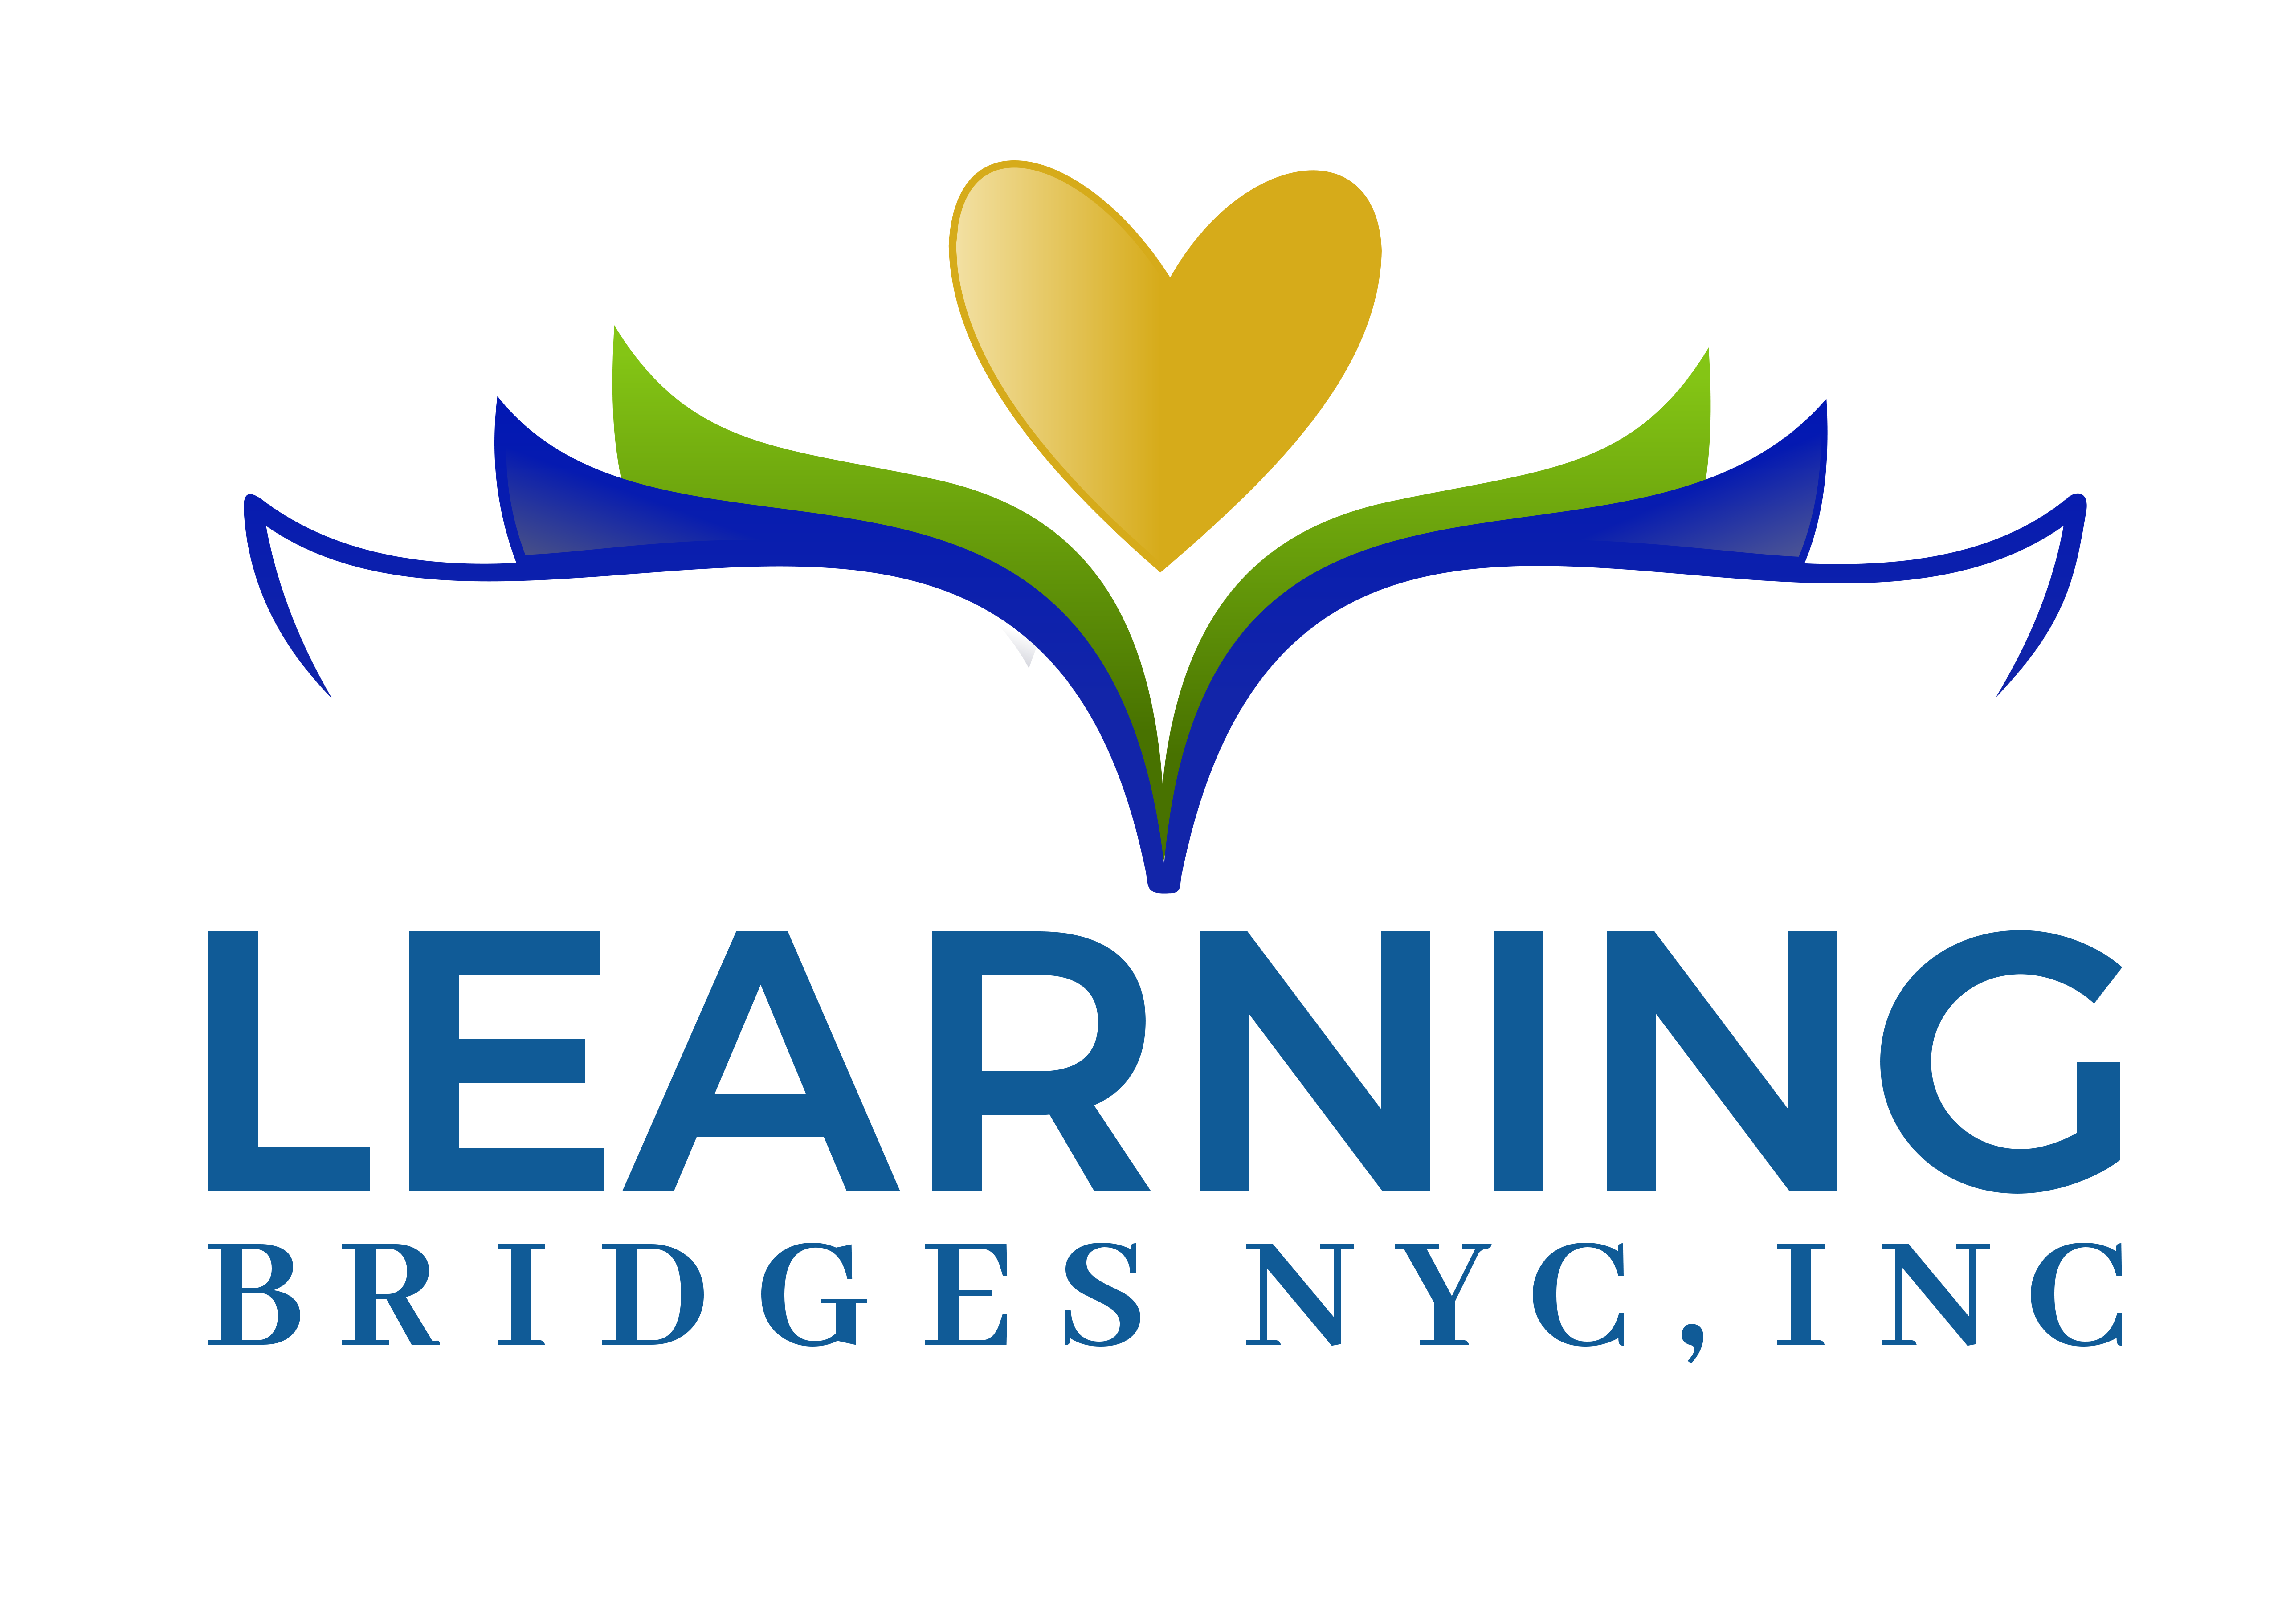 Learning Bridges NYC, Inc.